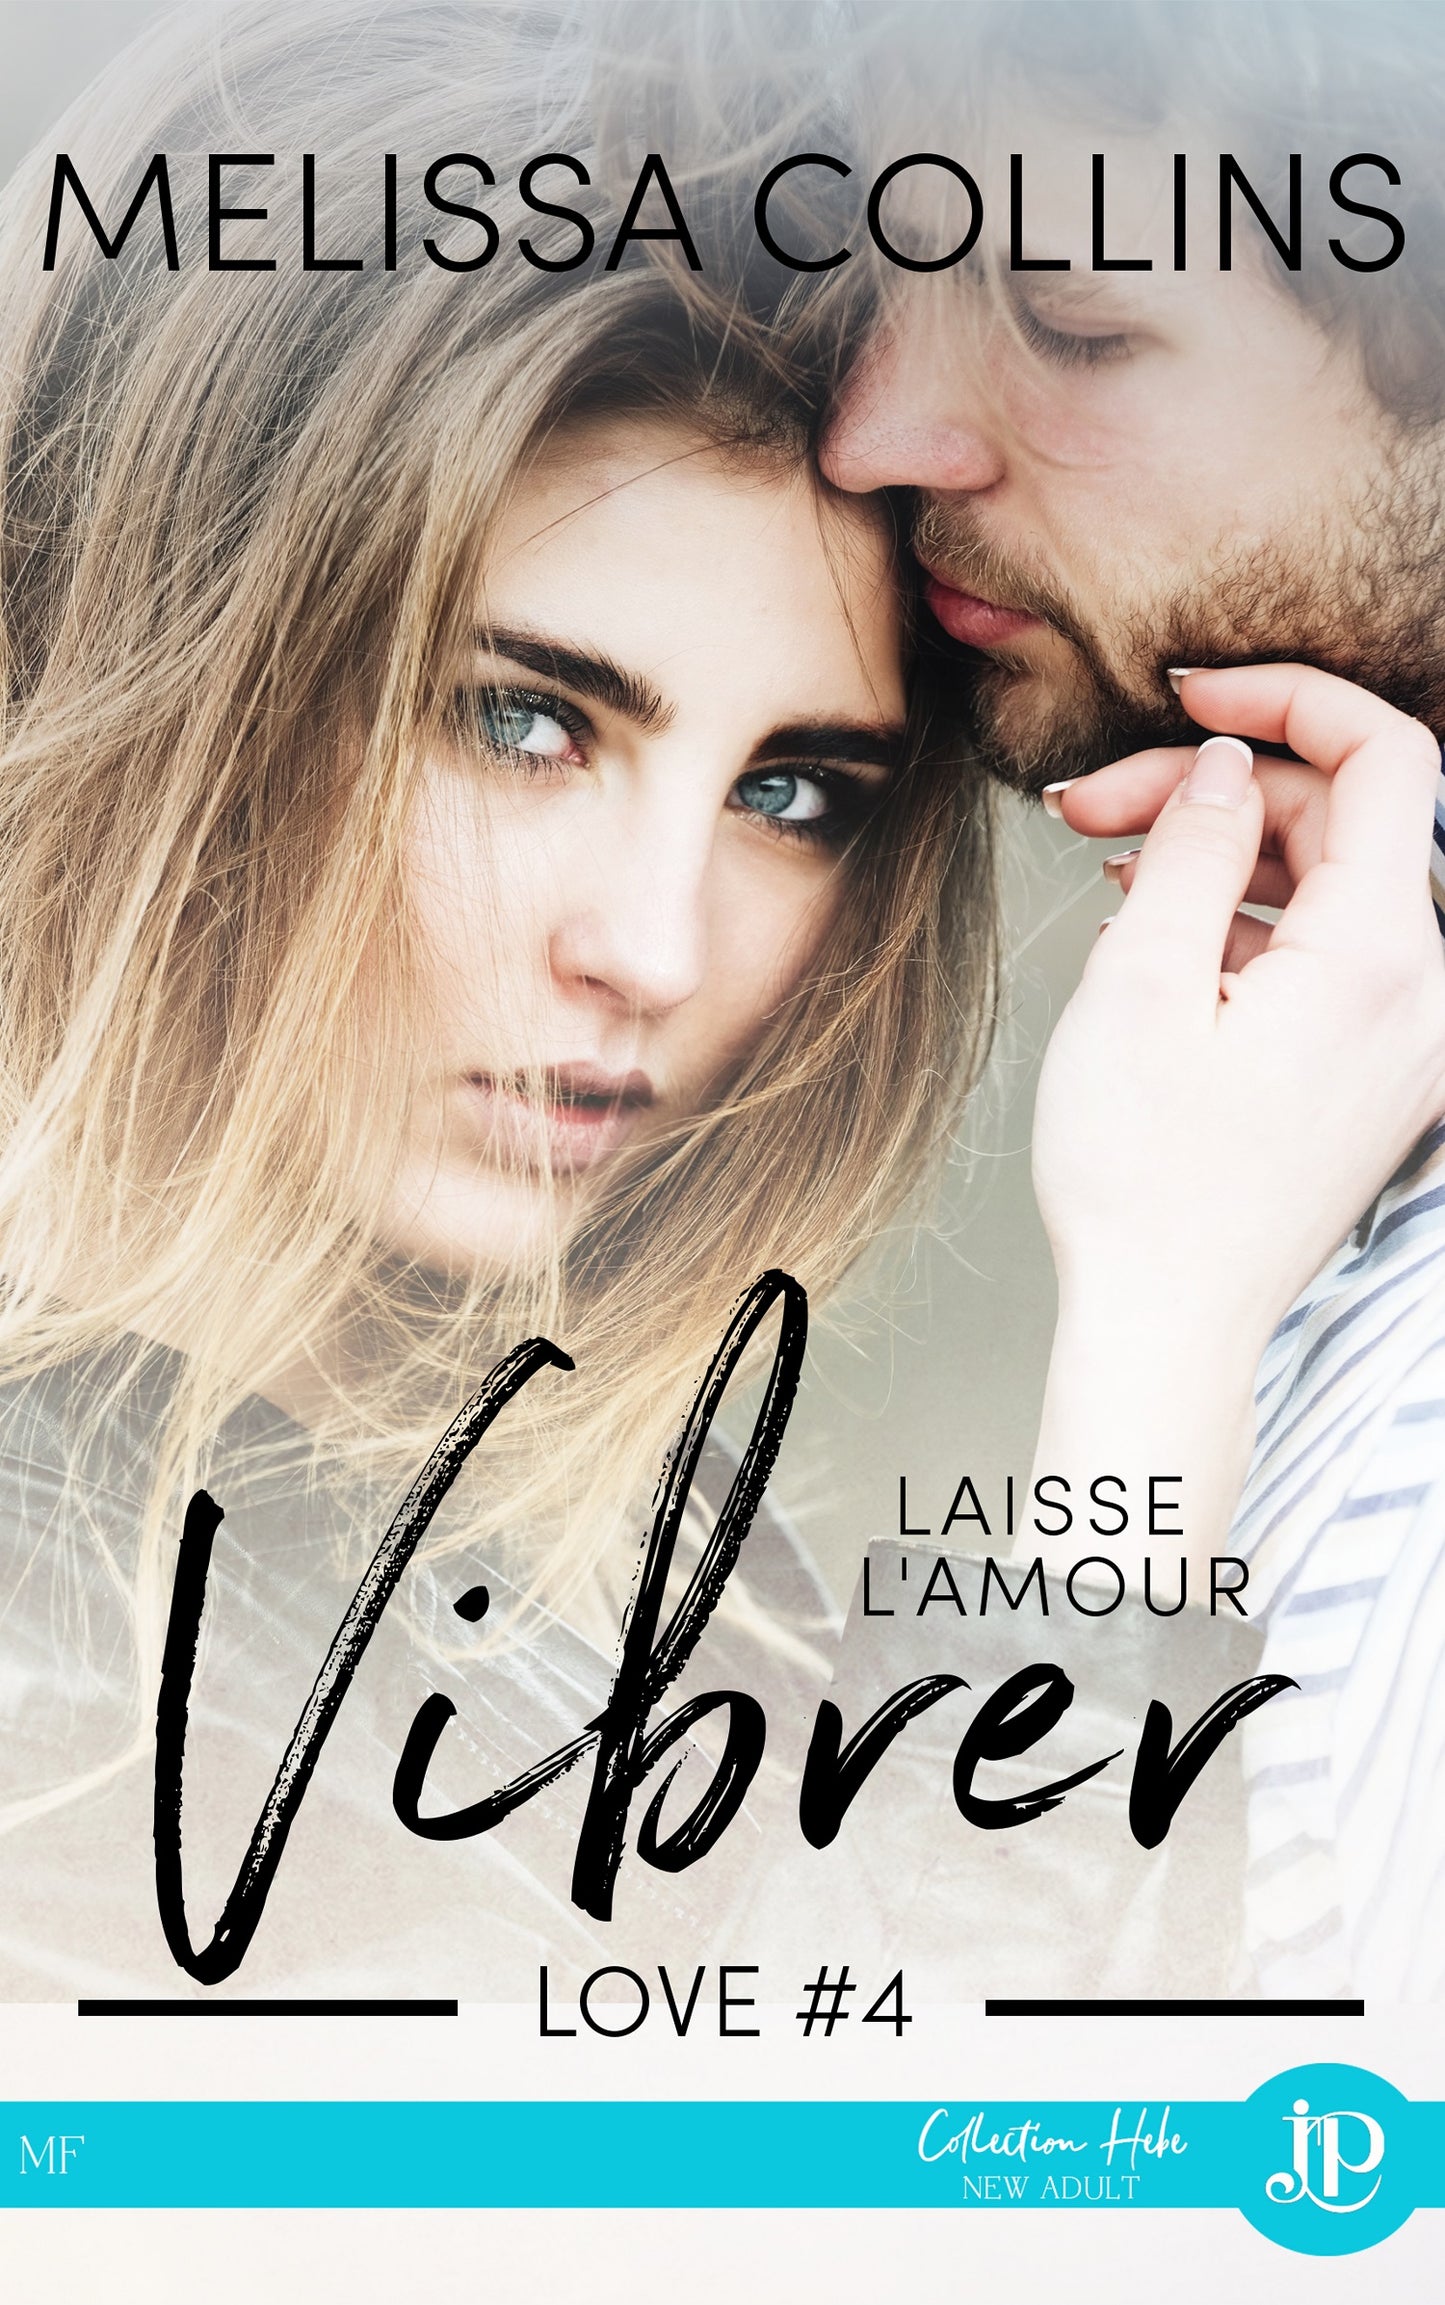 Love #4 - Laisse l'amour vibrer